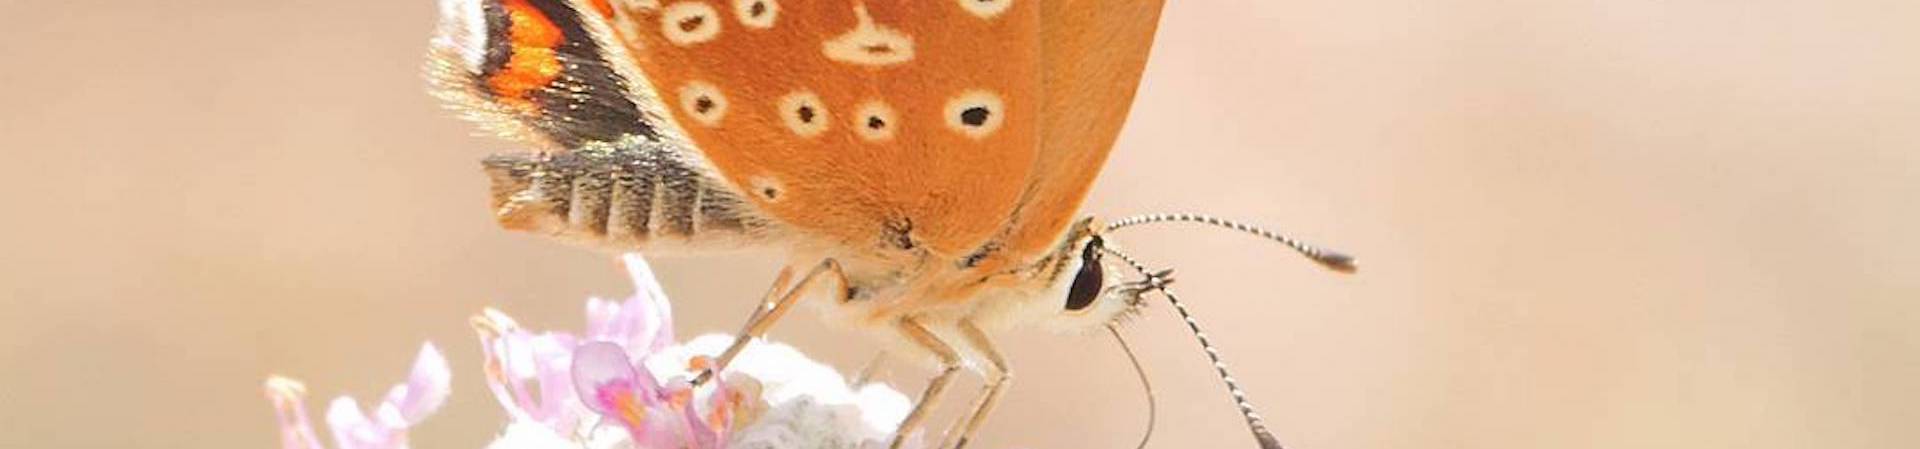 La UMU describe una nueva especie de mariposa desconocida